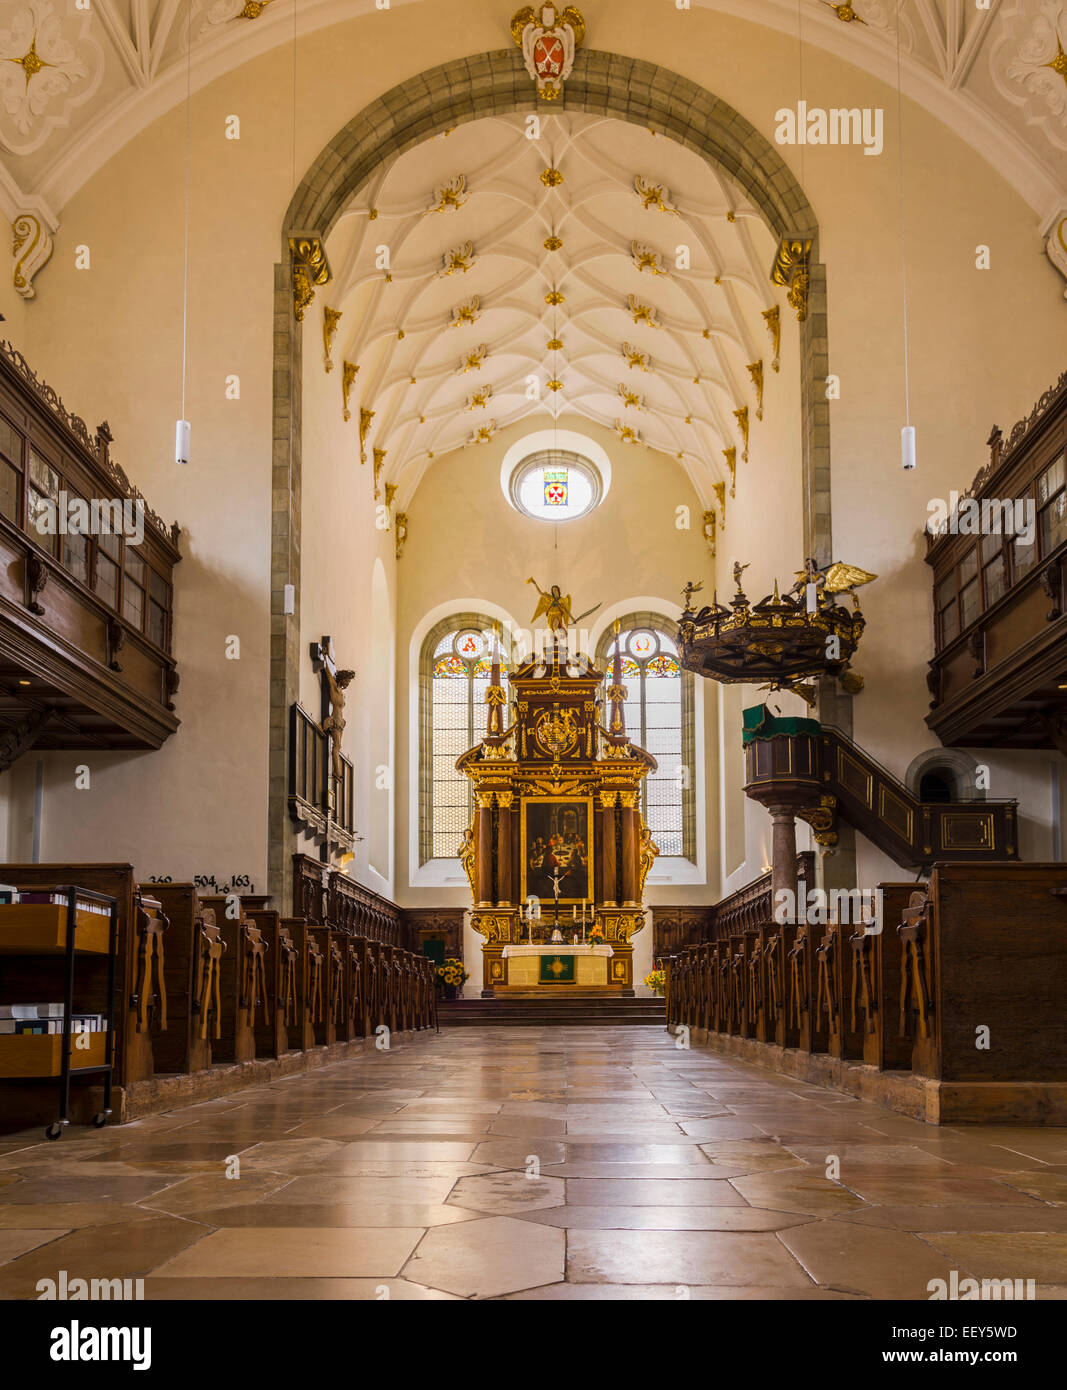 Interieur und Altar der Trinity Evangelical Lutheran Church in der mittelalterlichen Stadt Regensburg, Bayern, Deutschland Stockfoto